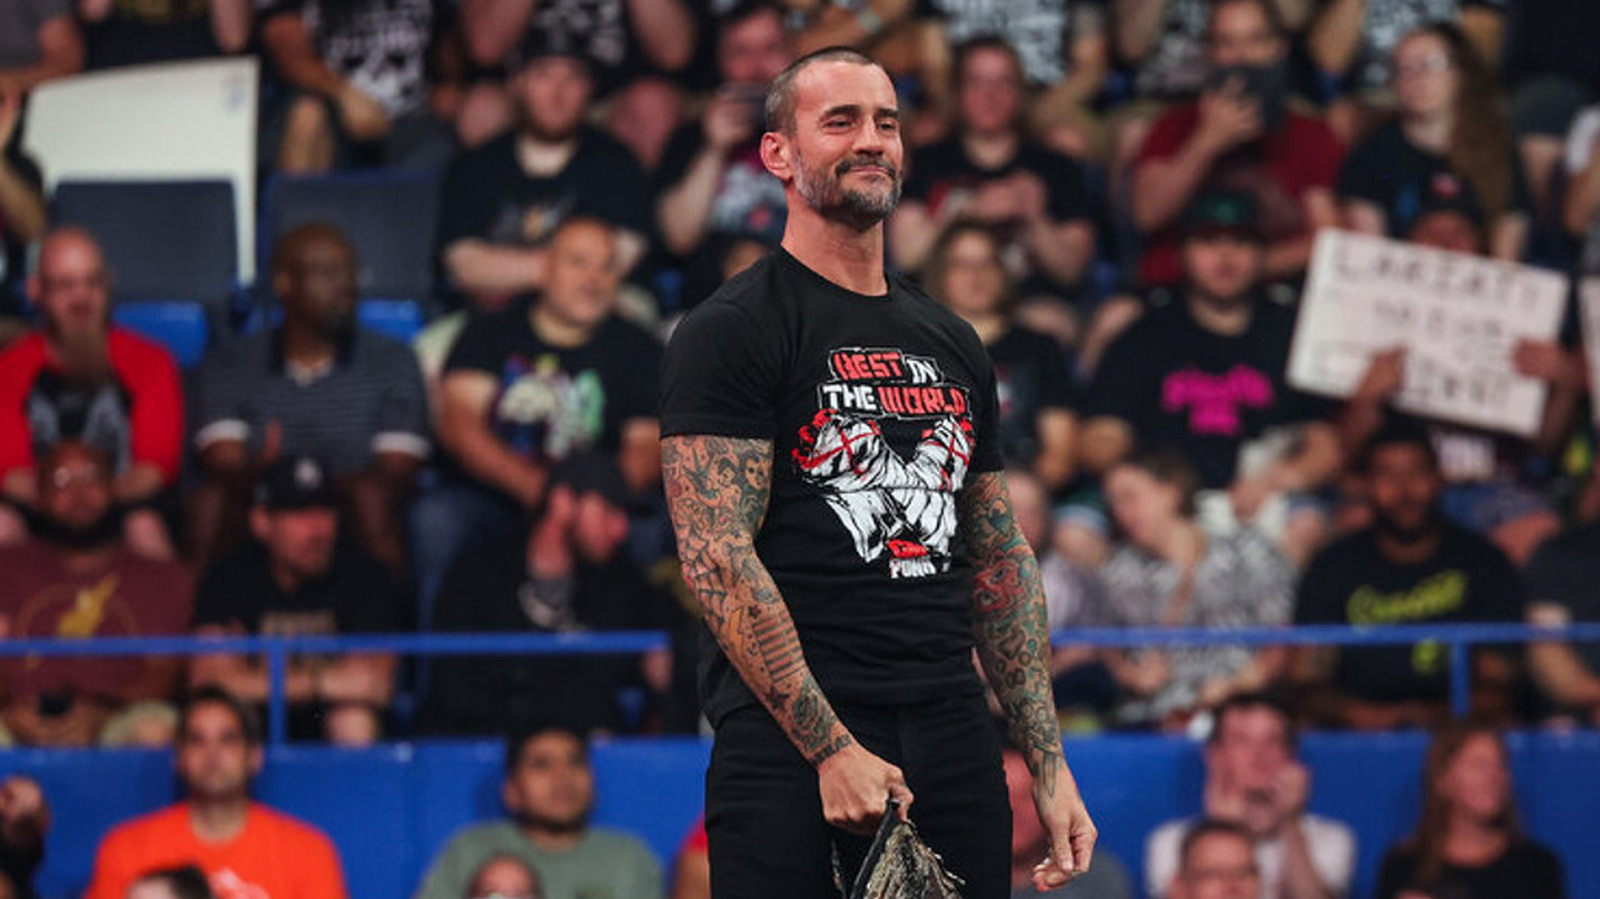 CM Punk supuestamente escoltado a su vestuario por seguridad después de AEW All In Match